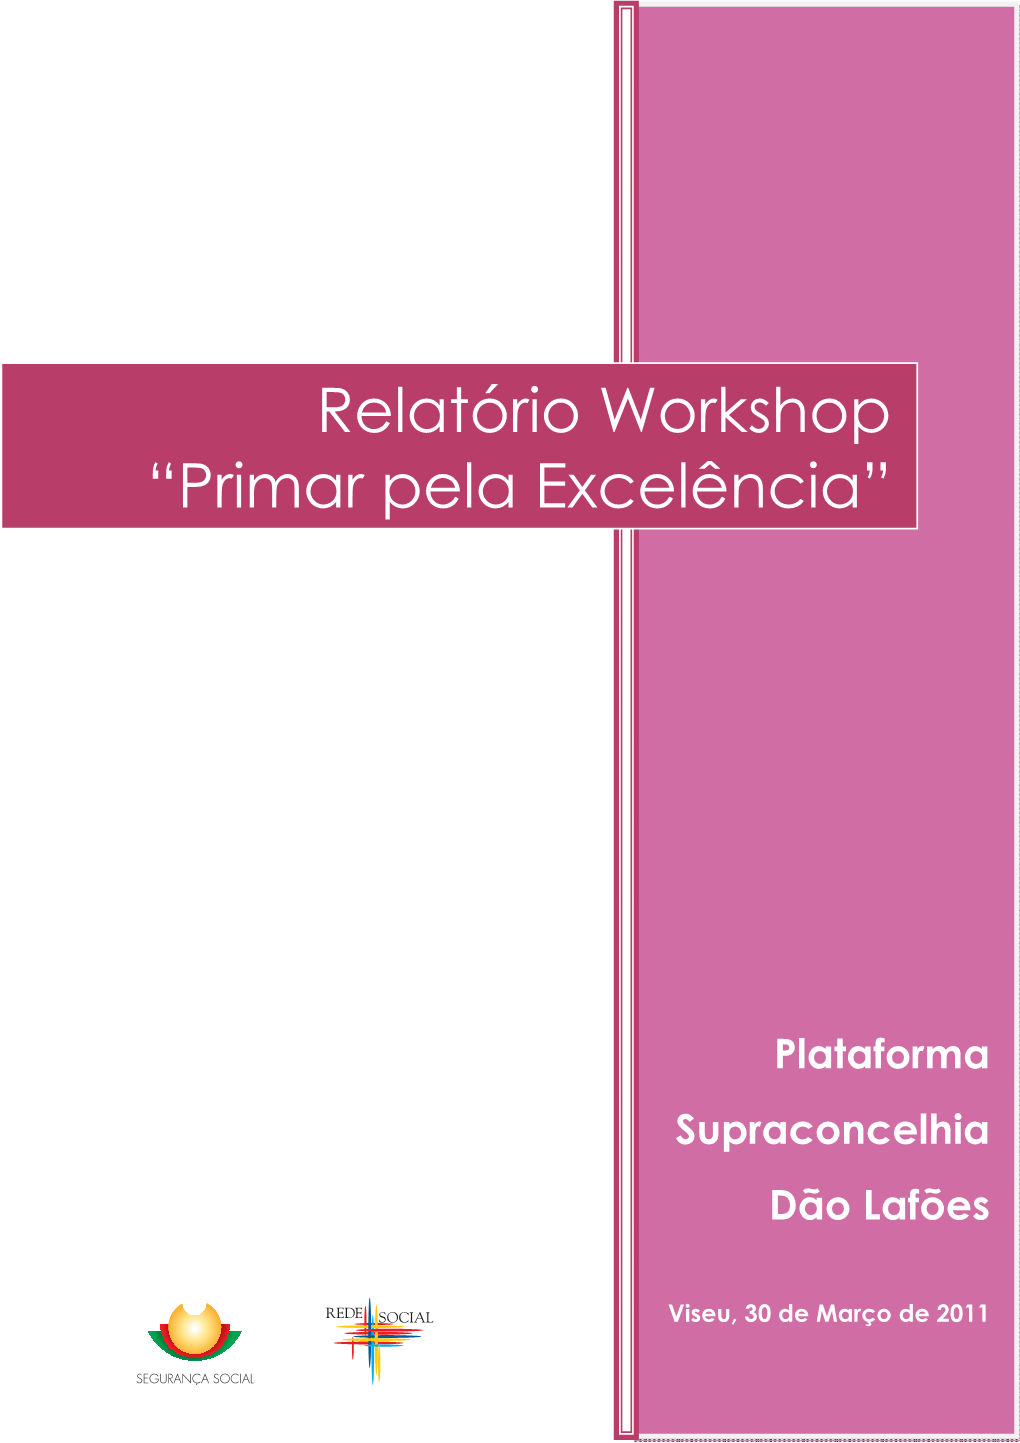 Relatório Workshop Da Plataforma Supraconcelhia Dão Lafões